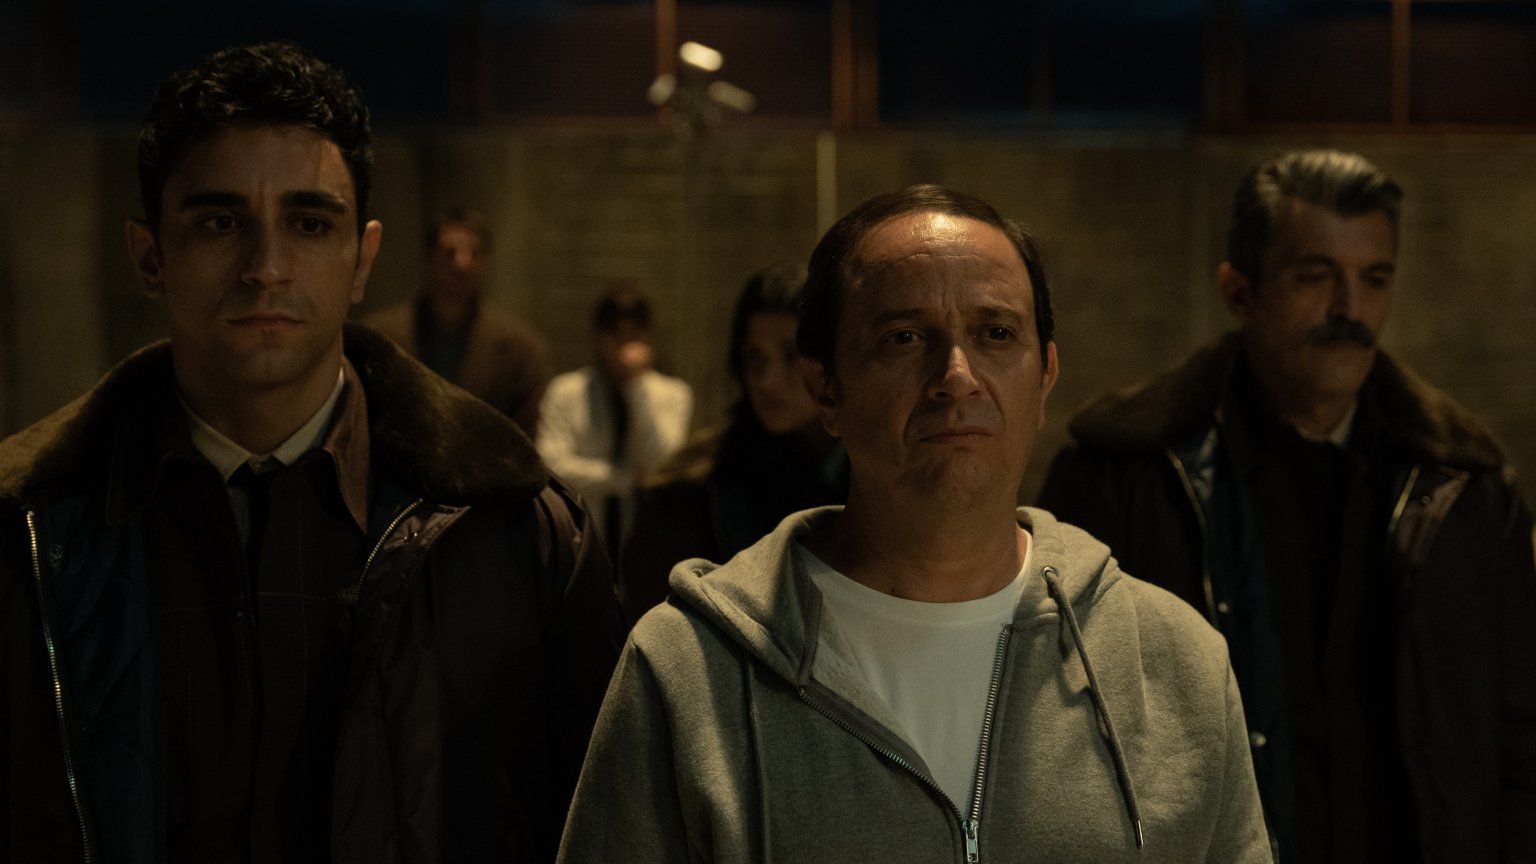 'La noche más larga' trailer: nieuwe Spaanse misdaadserie al heel binnenkort te zien op Netflix